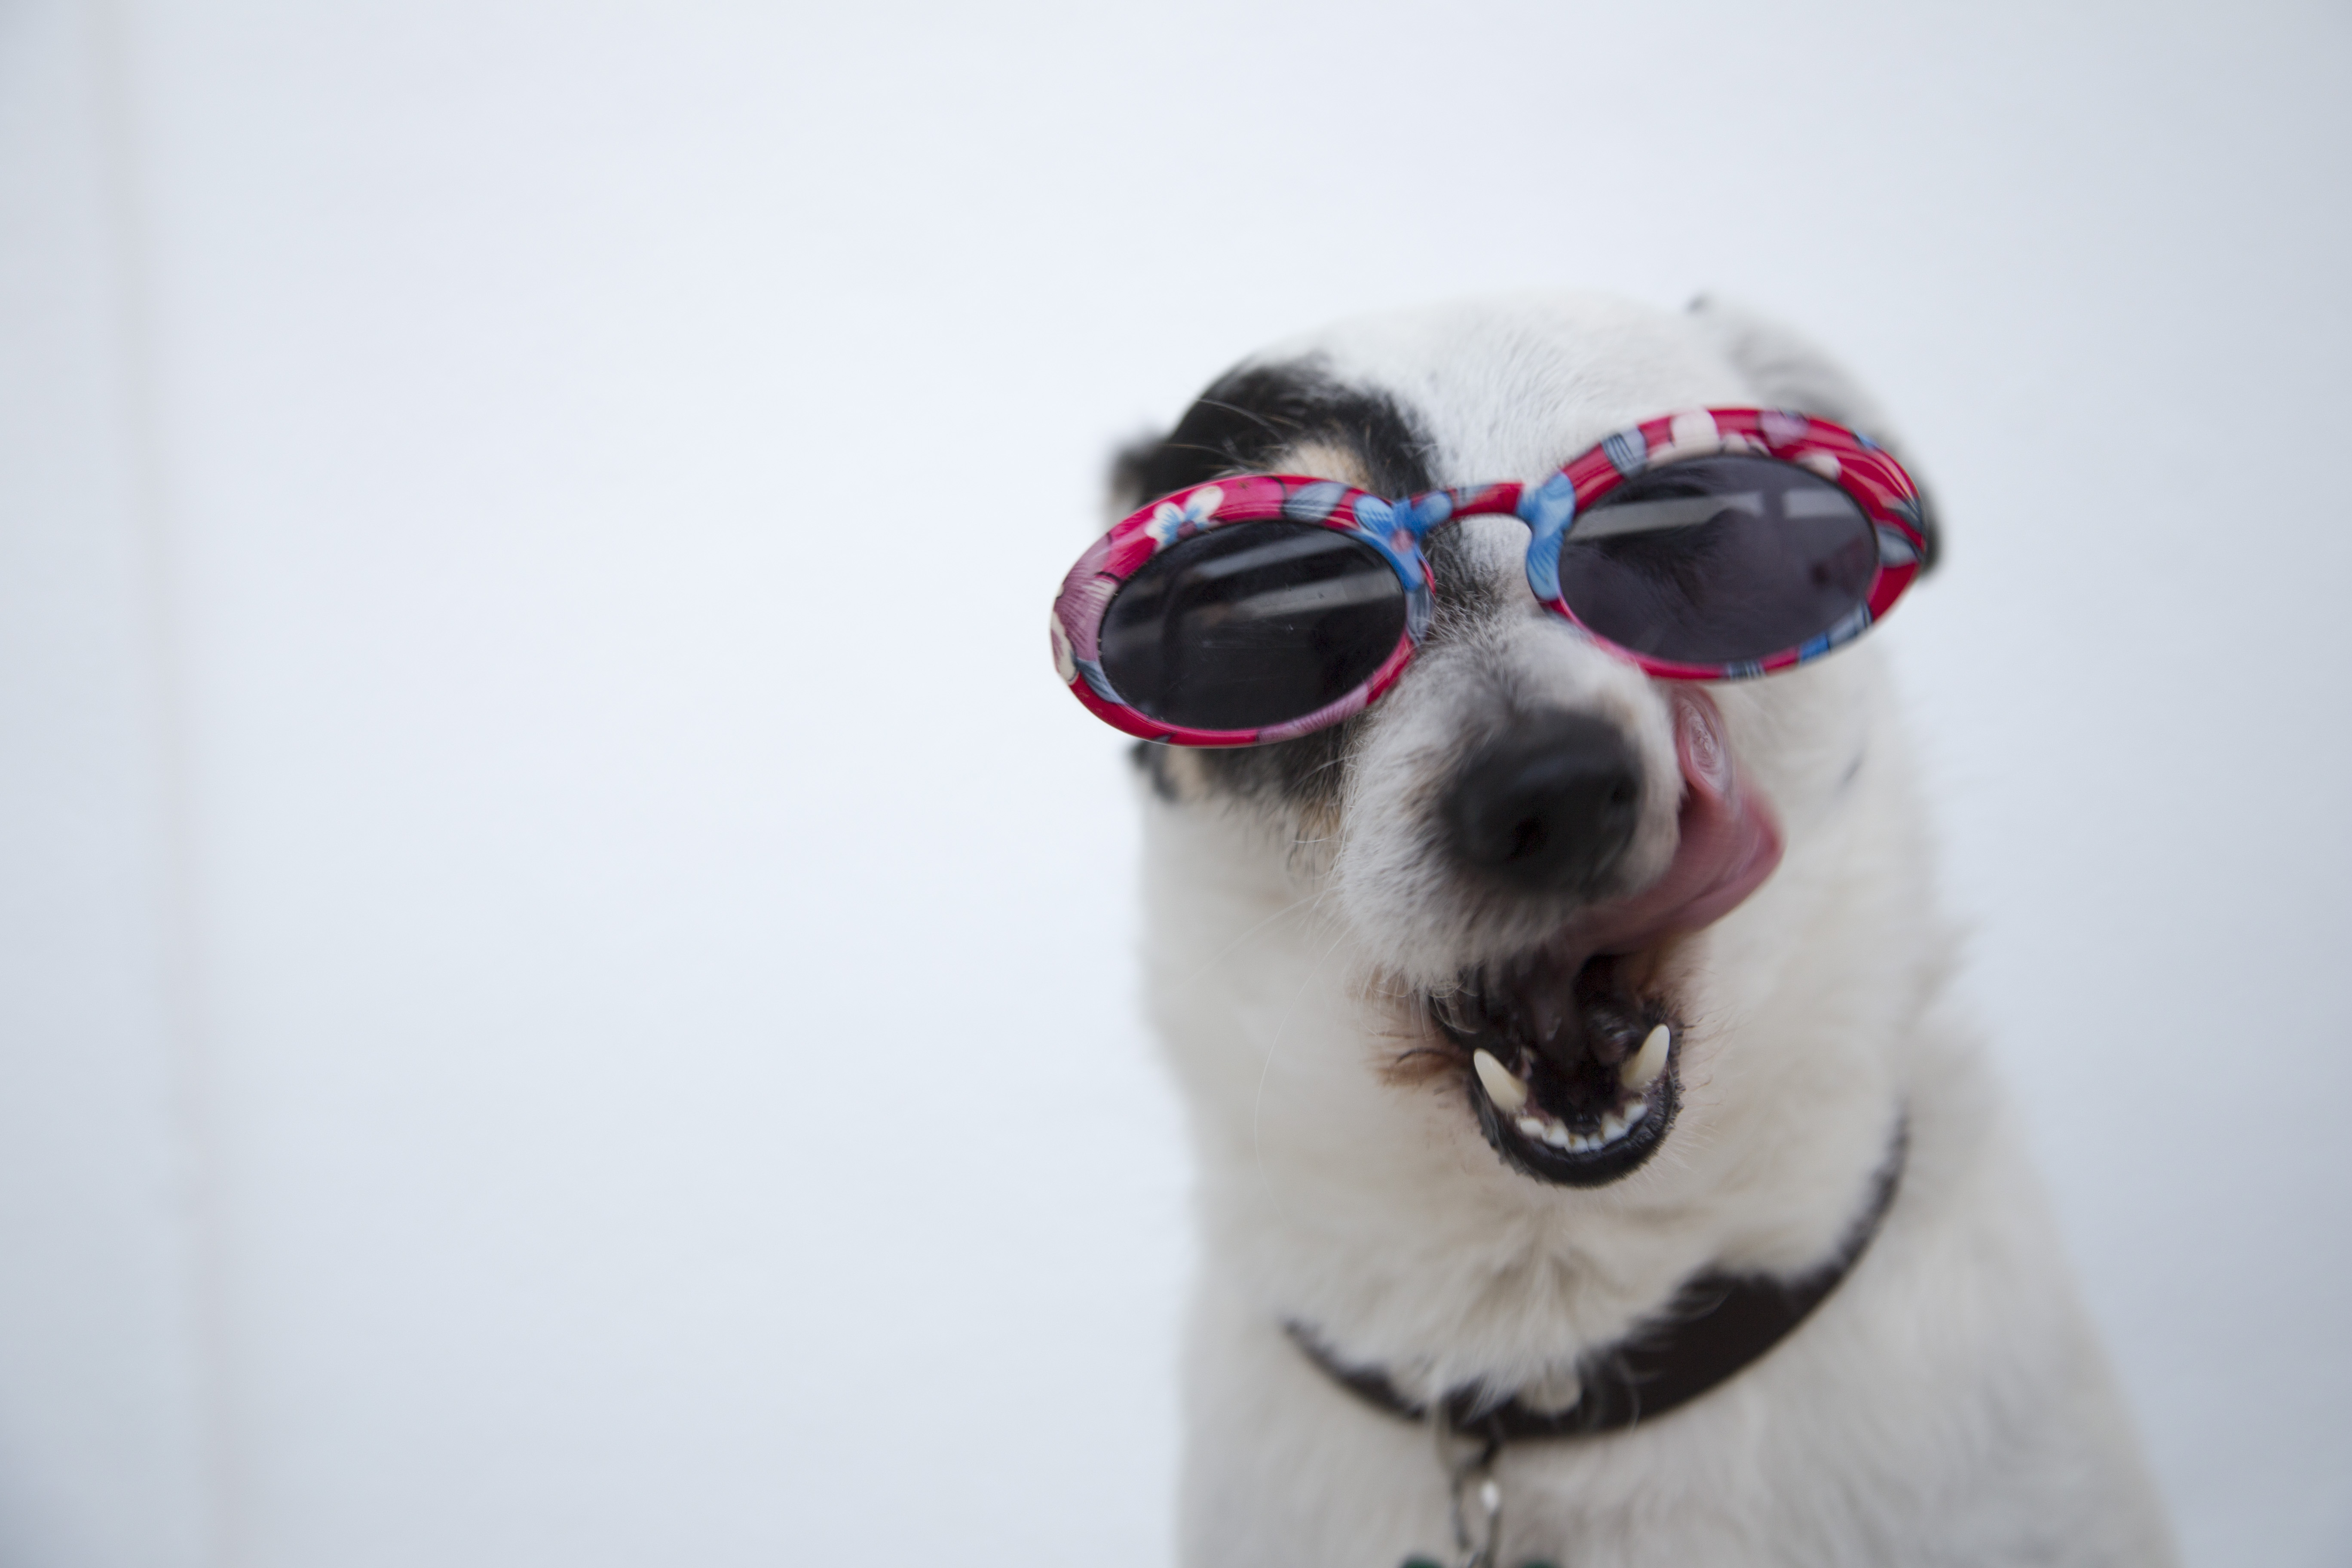 선글라스를 쓰고 있는 강아지 사진.